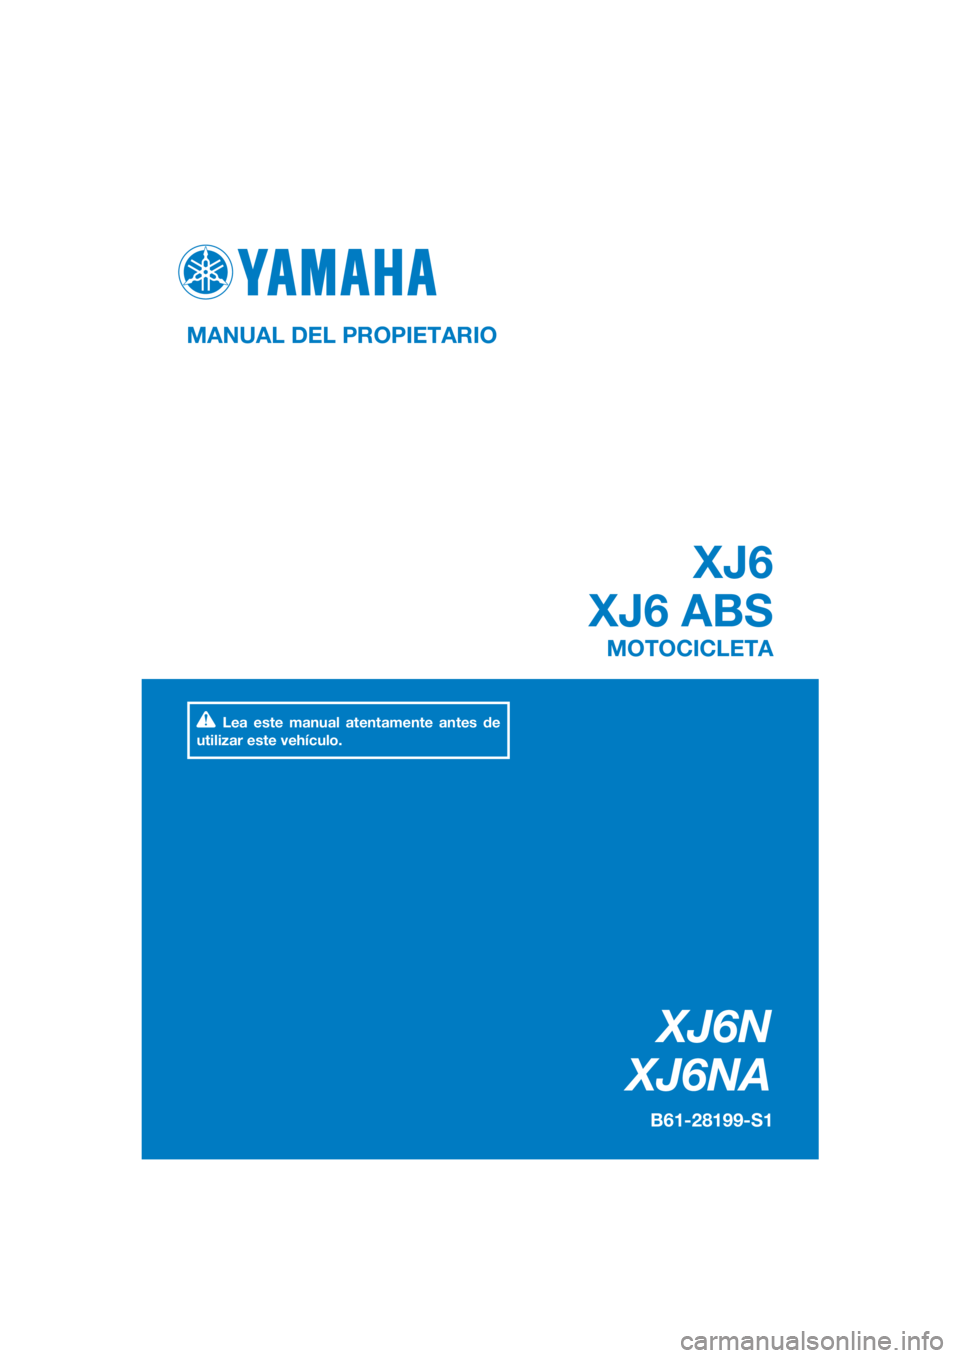 YAMAHA XJ6-N 2016  Manuale de Empleo (in Spanish) DIC183
XJ6N
XJ6NA
XJ6
XJ6 ABS
MANUAL DEL PROPIETARIO
B61-28199-S1
MOTOCICLETA
Lea este manual atentamente antes de 
utilizar este vehículo.
[Spanish  (S)] 